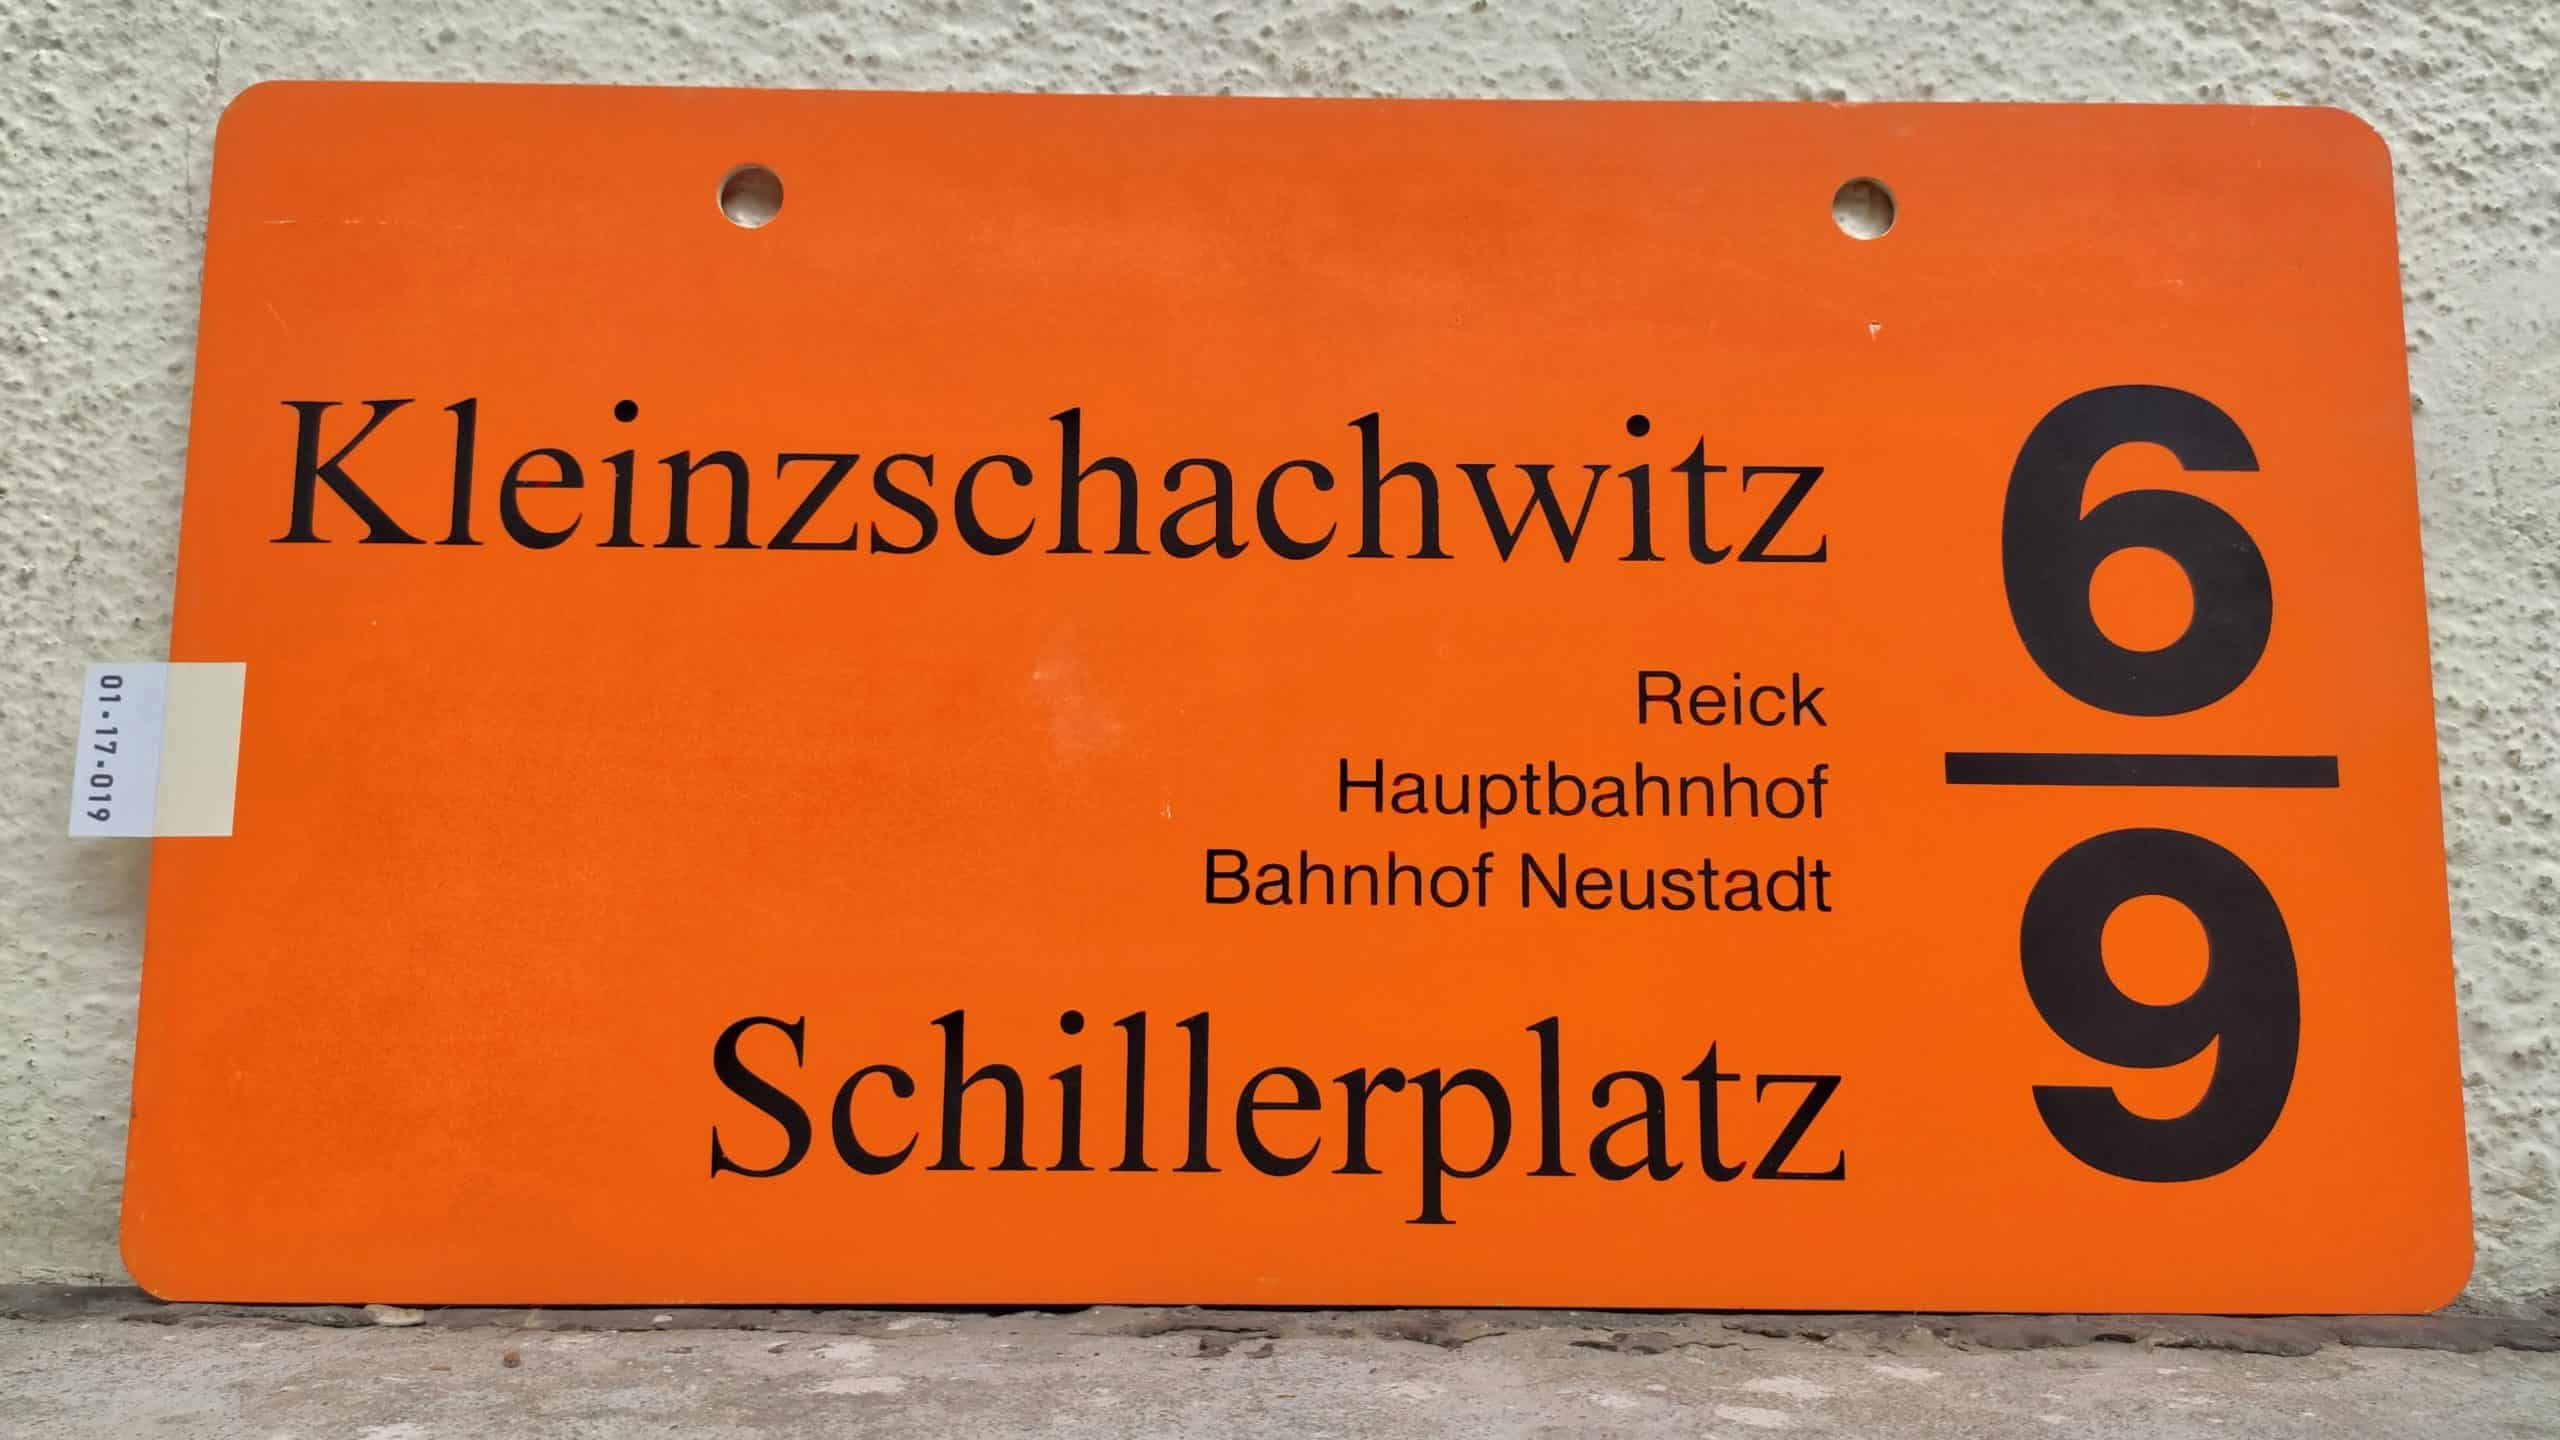 6/9 Kleinzschachwitz – Schillerplatz #1